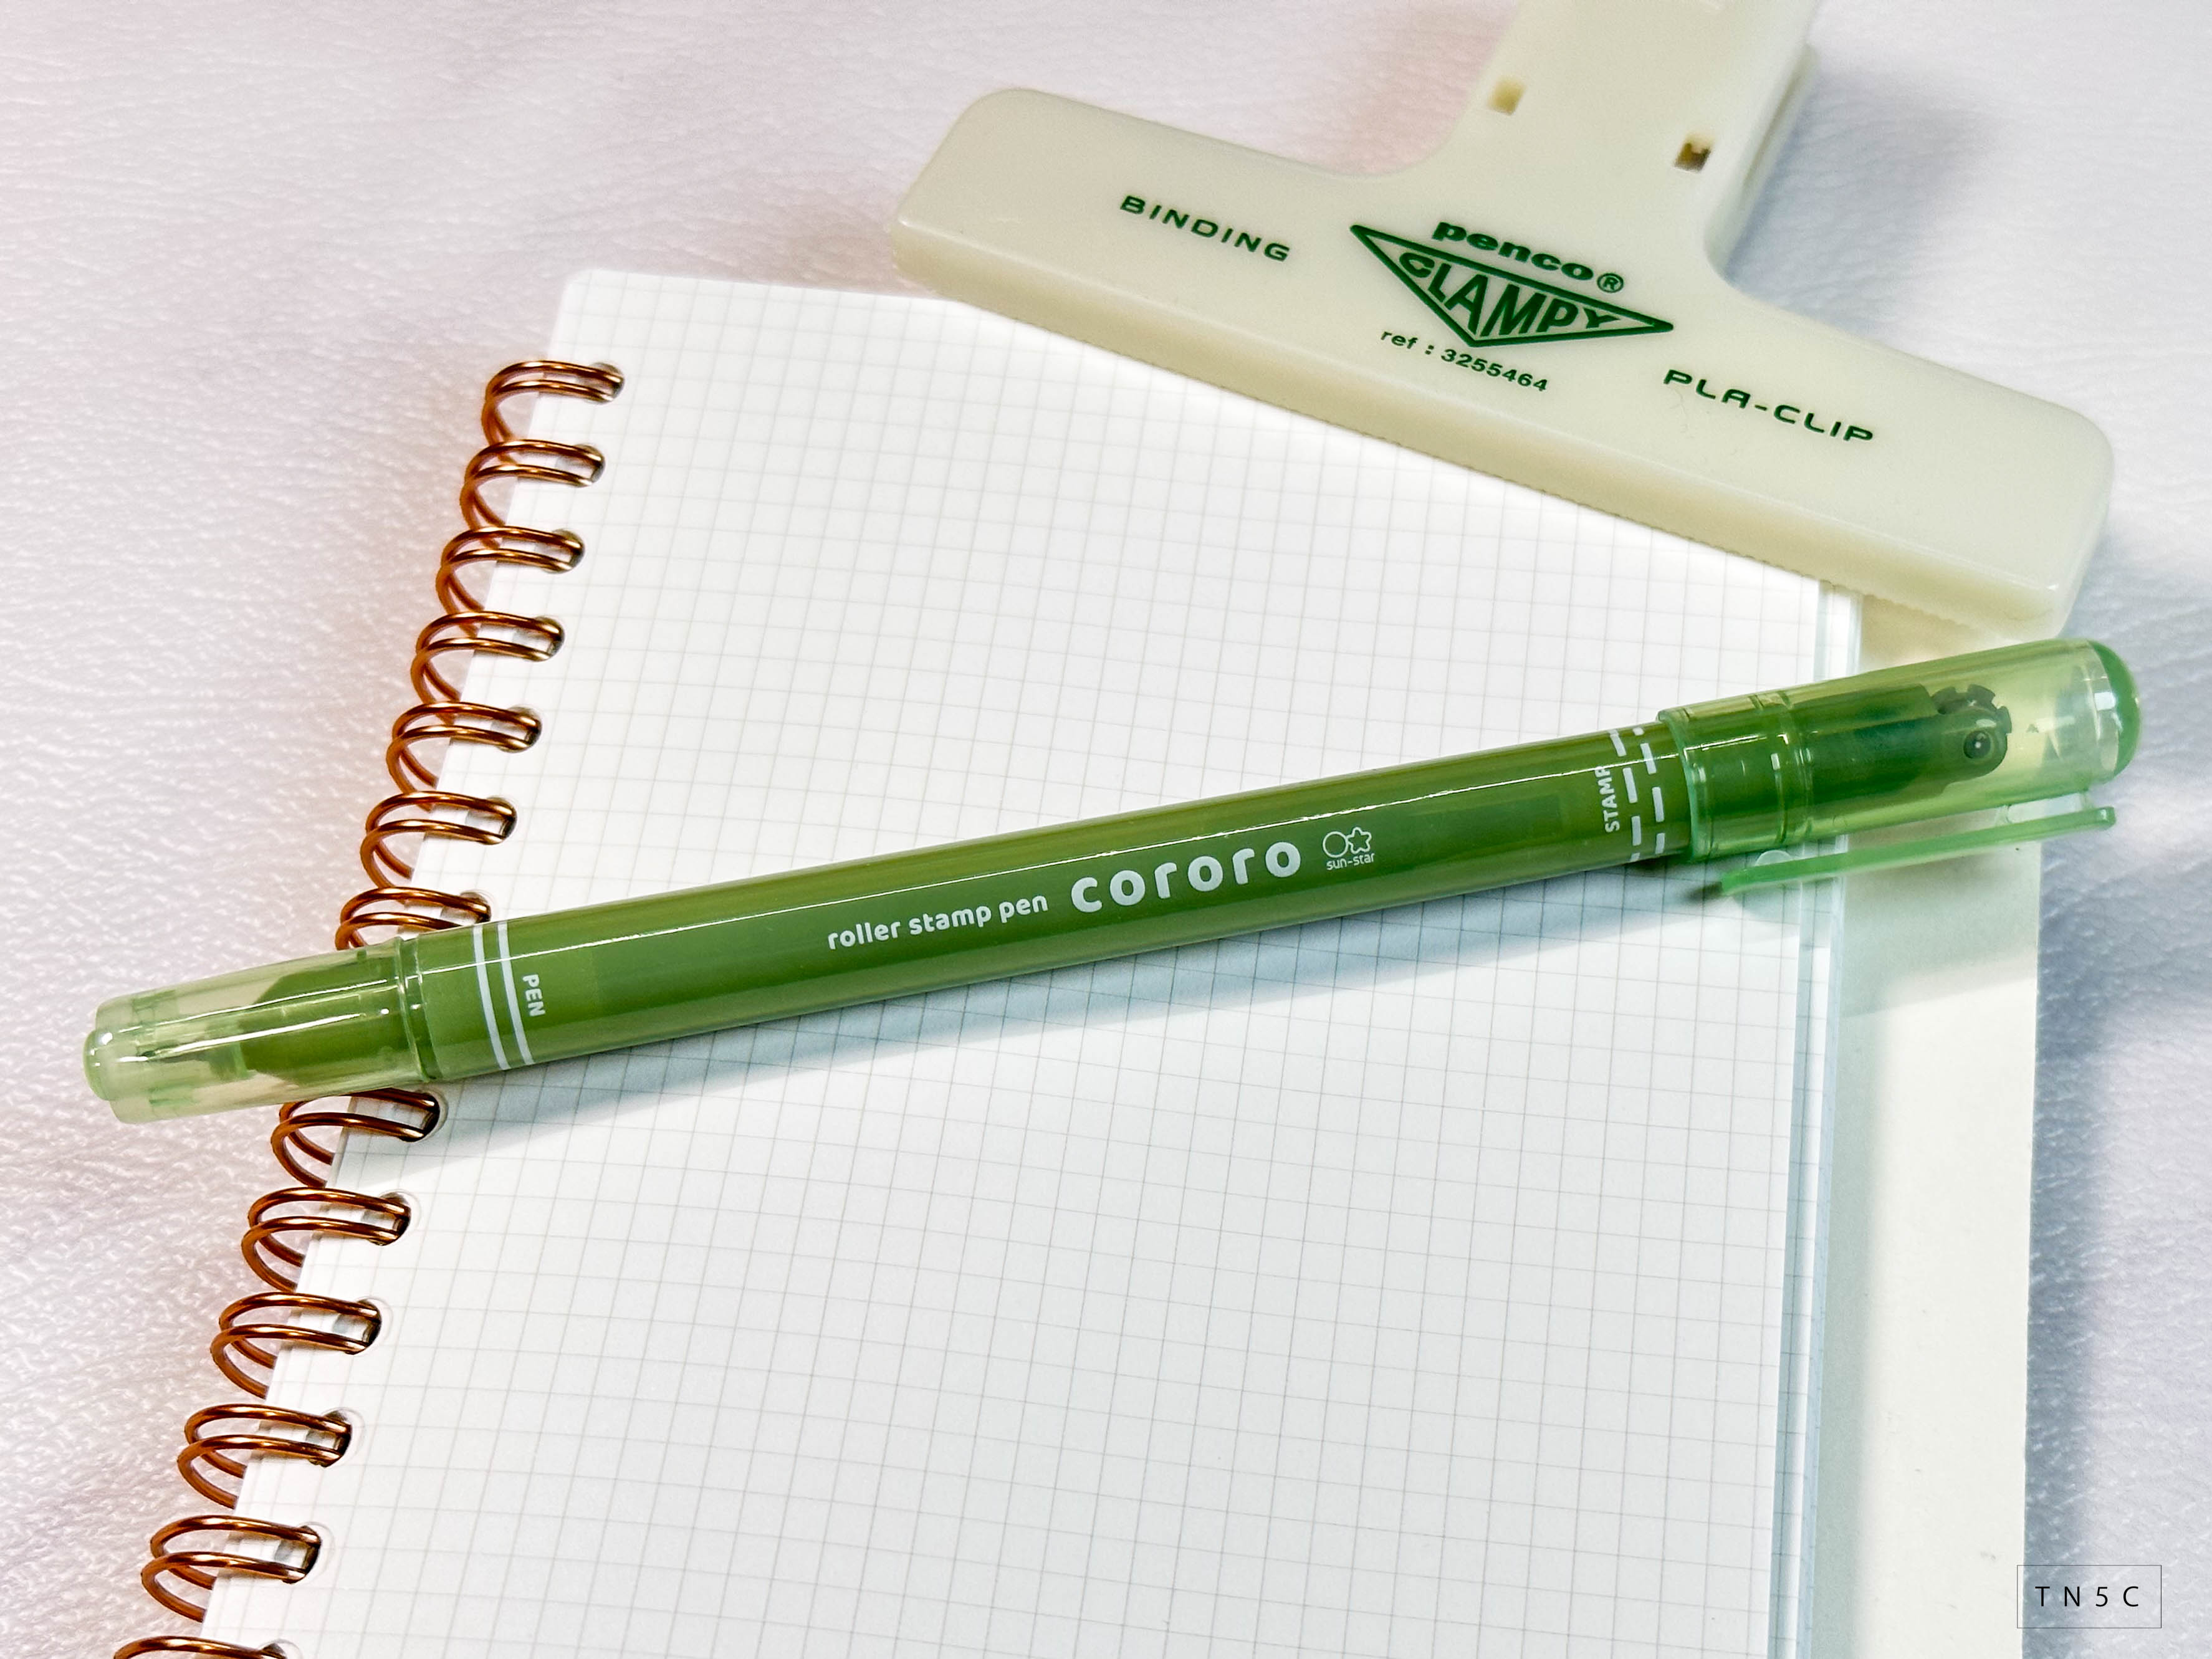 Tokyo Pen Shop - Cororo Roller Stamp Pen is here! This pen